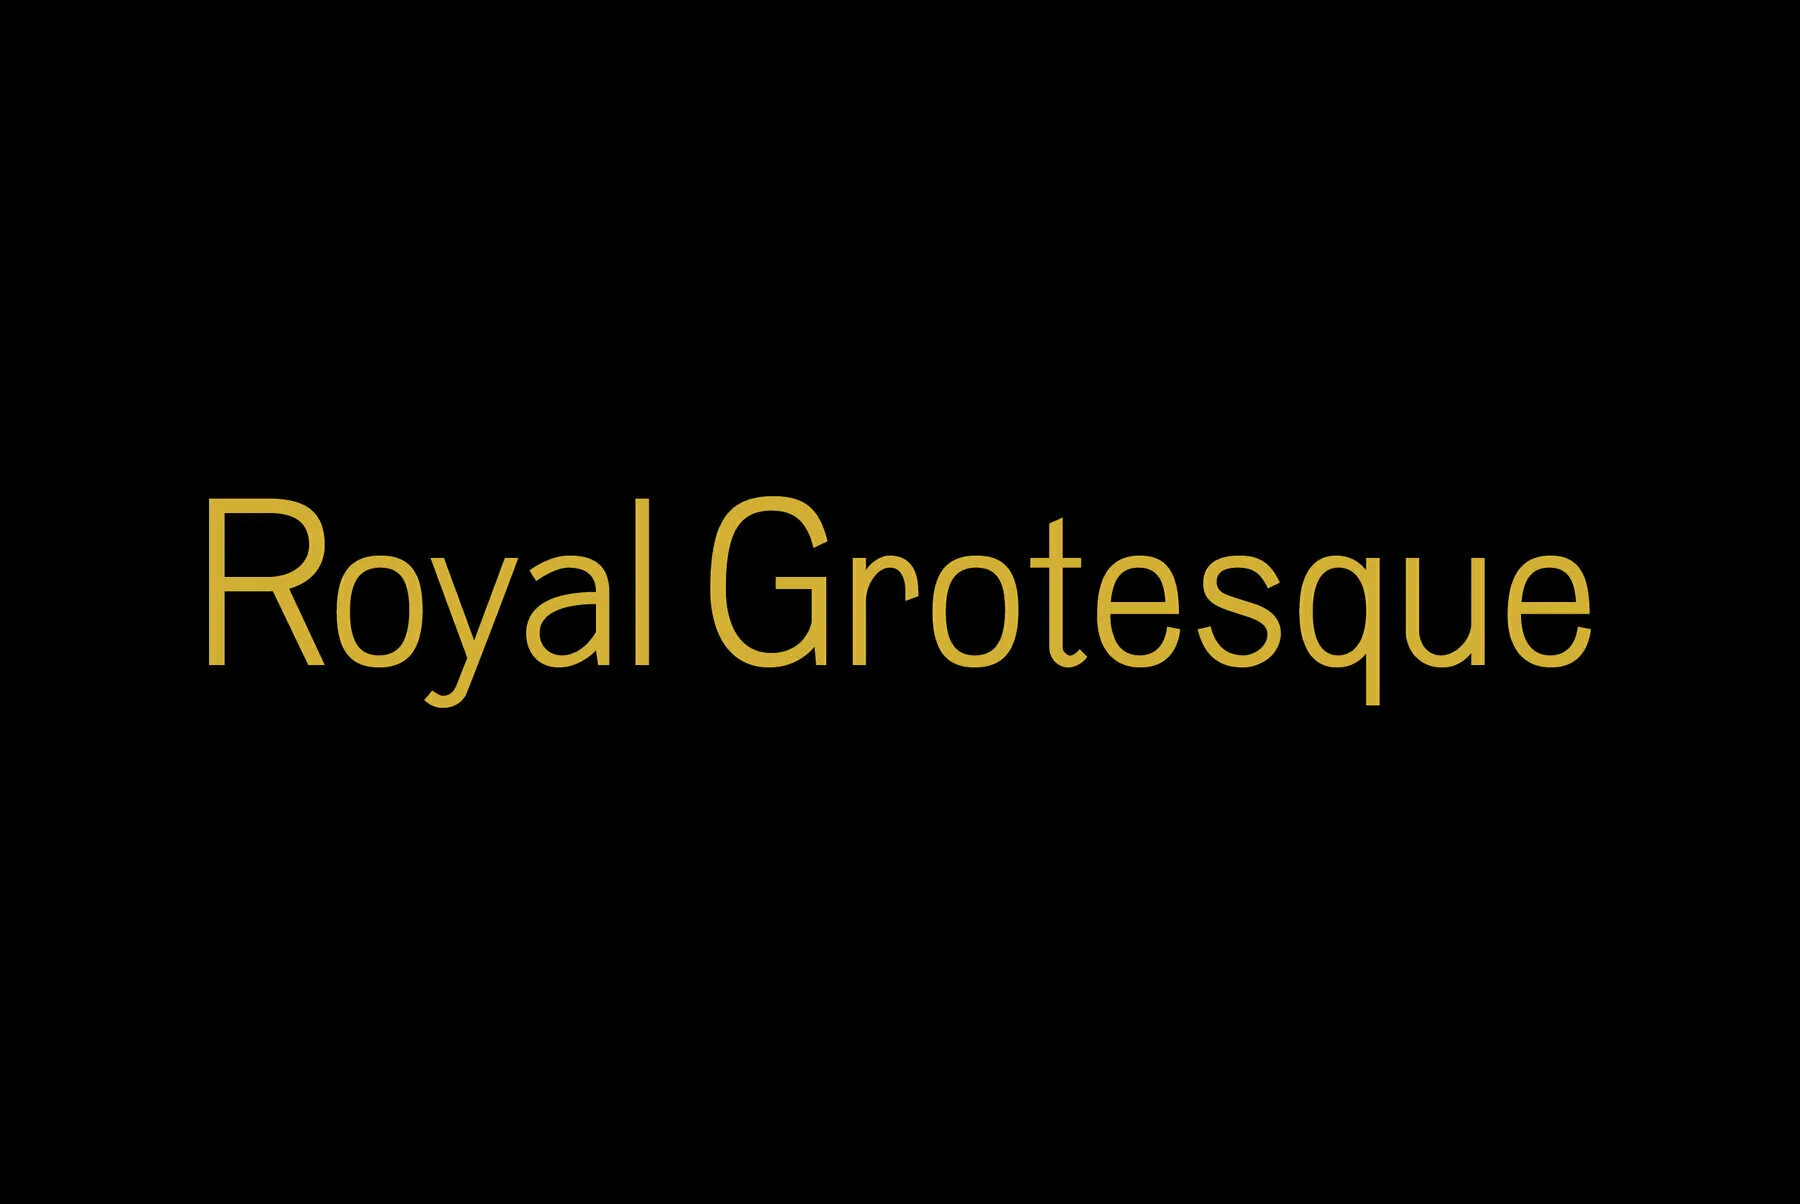 Royal Grotesque